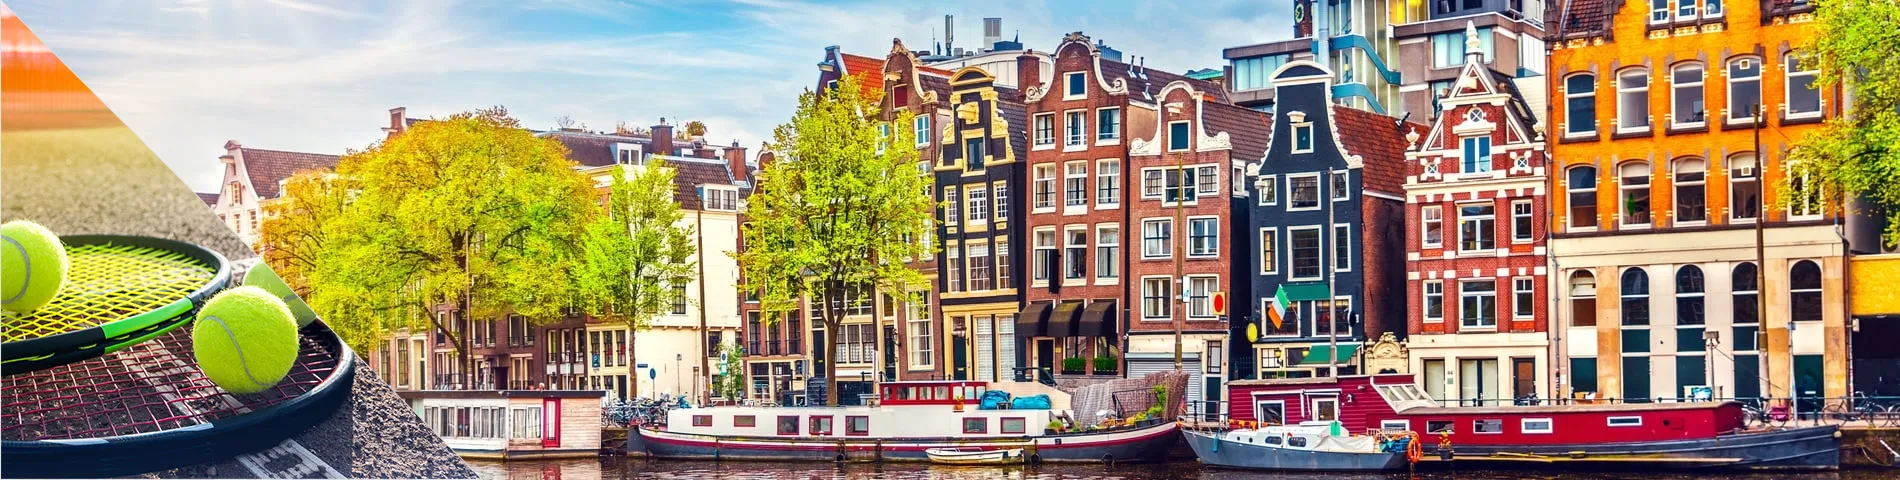 أمستردام - تعلم اللغة والتنس